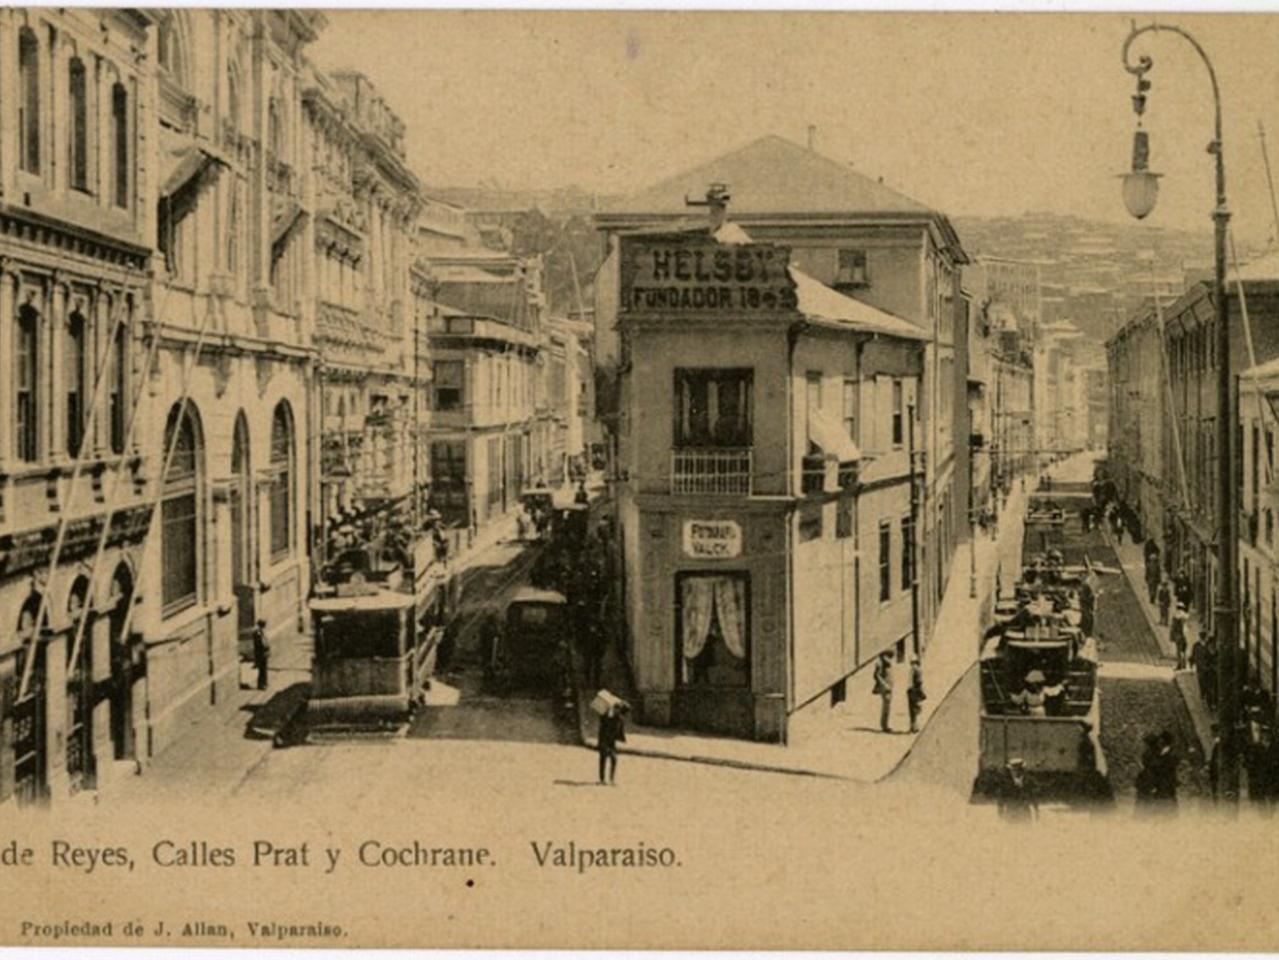 Primera tarjeta postal. Calotipo, fotomecánico monocromo sobre papel, 13.7 x 8 cm. Cruz de Reyes, calles Prat y Cochrane, Valparaíso.